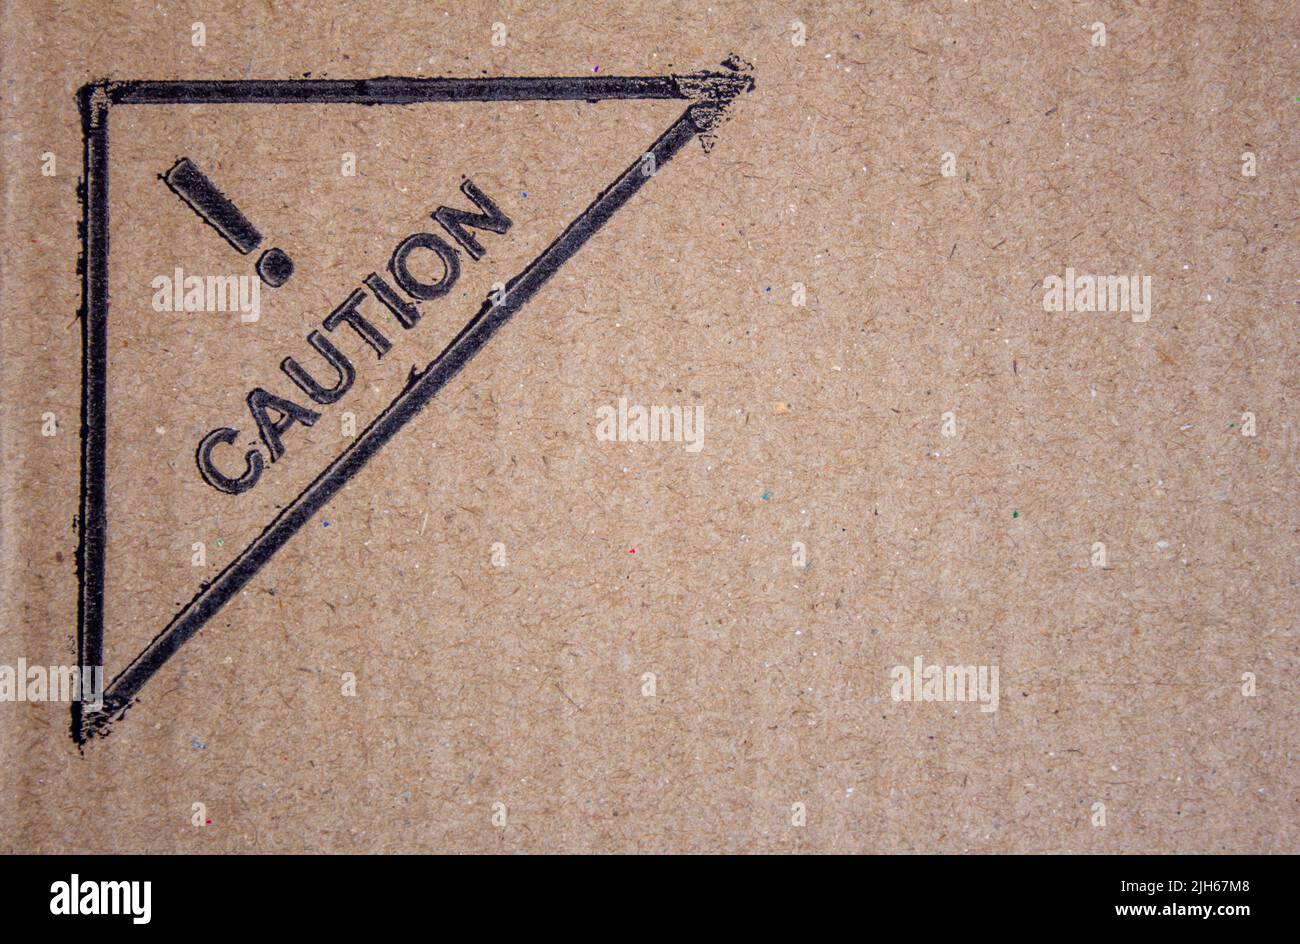 Ansicht Karton mit Warnschild. Verpackungskarton mit Symbol zur Warnung empfindlicher Gegenstände und muss sorgfältig gehandhabt werden. Stockfoto